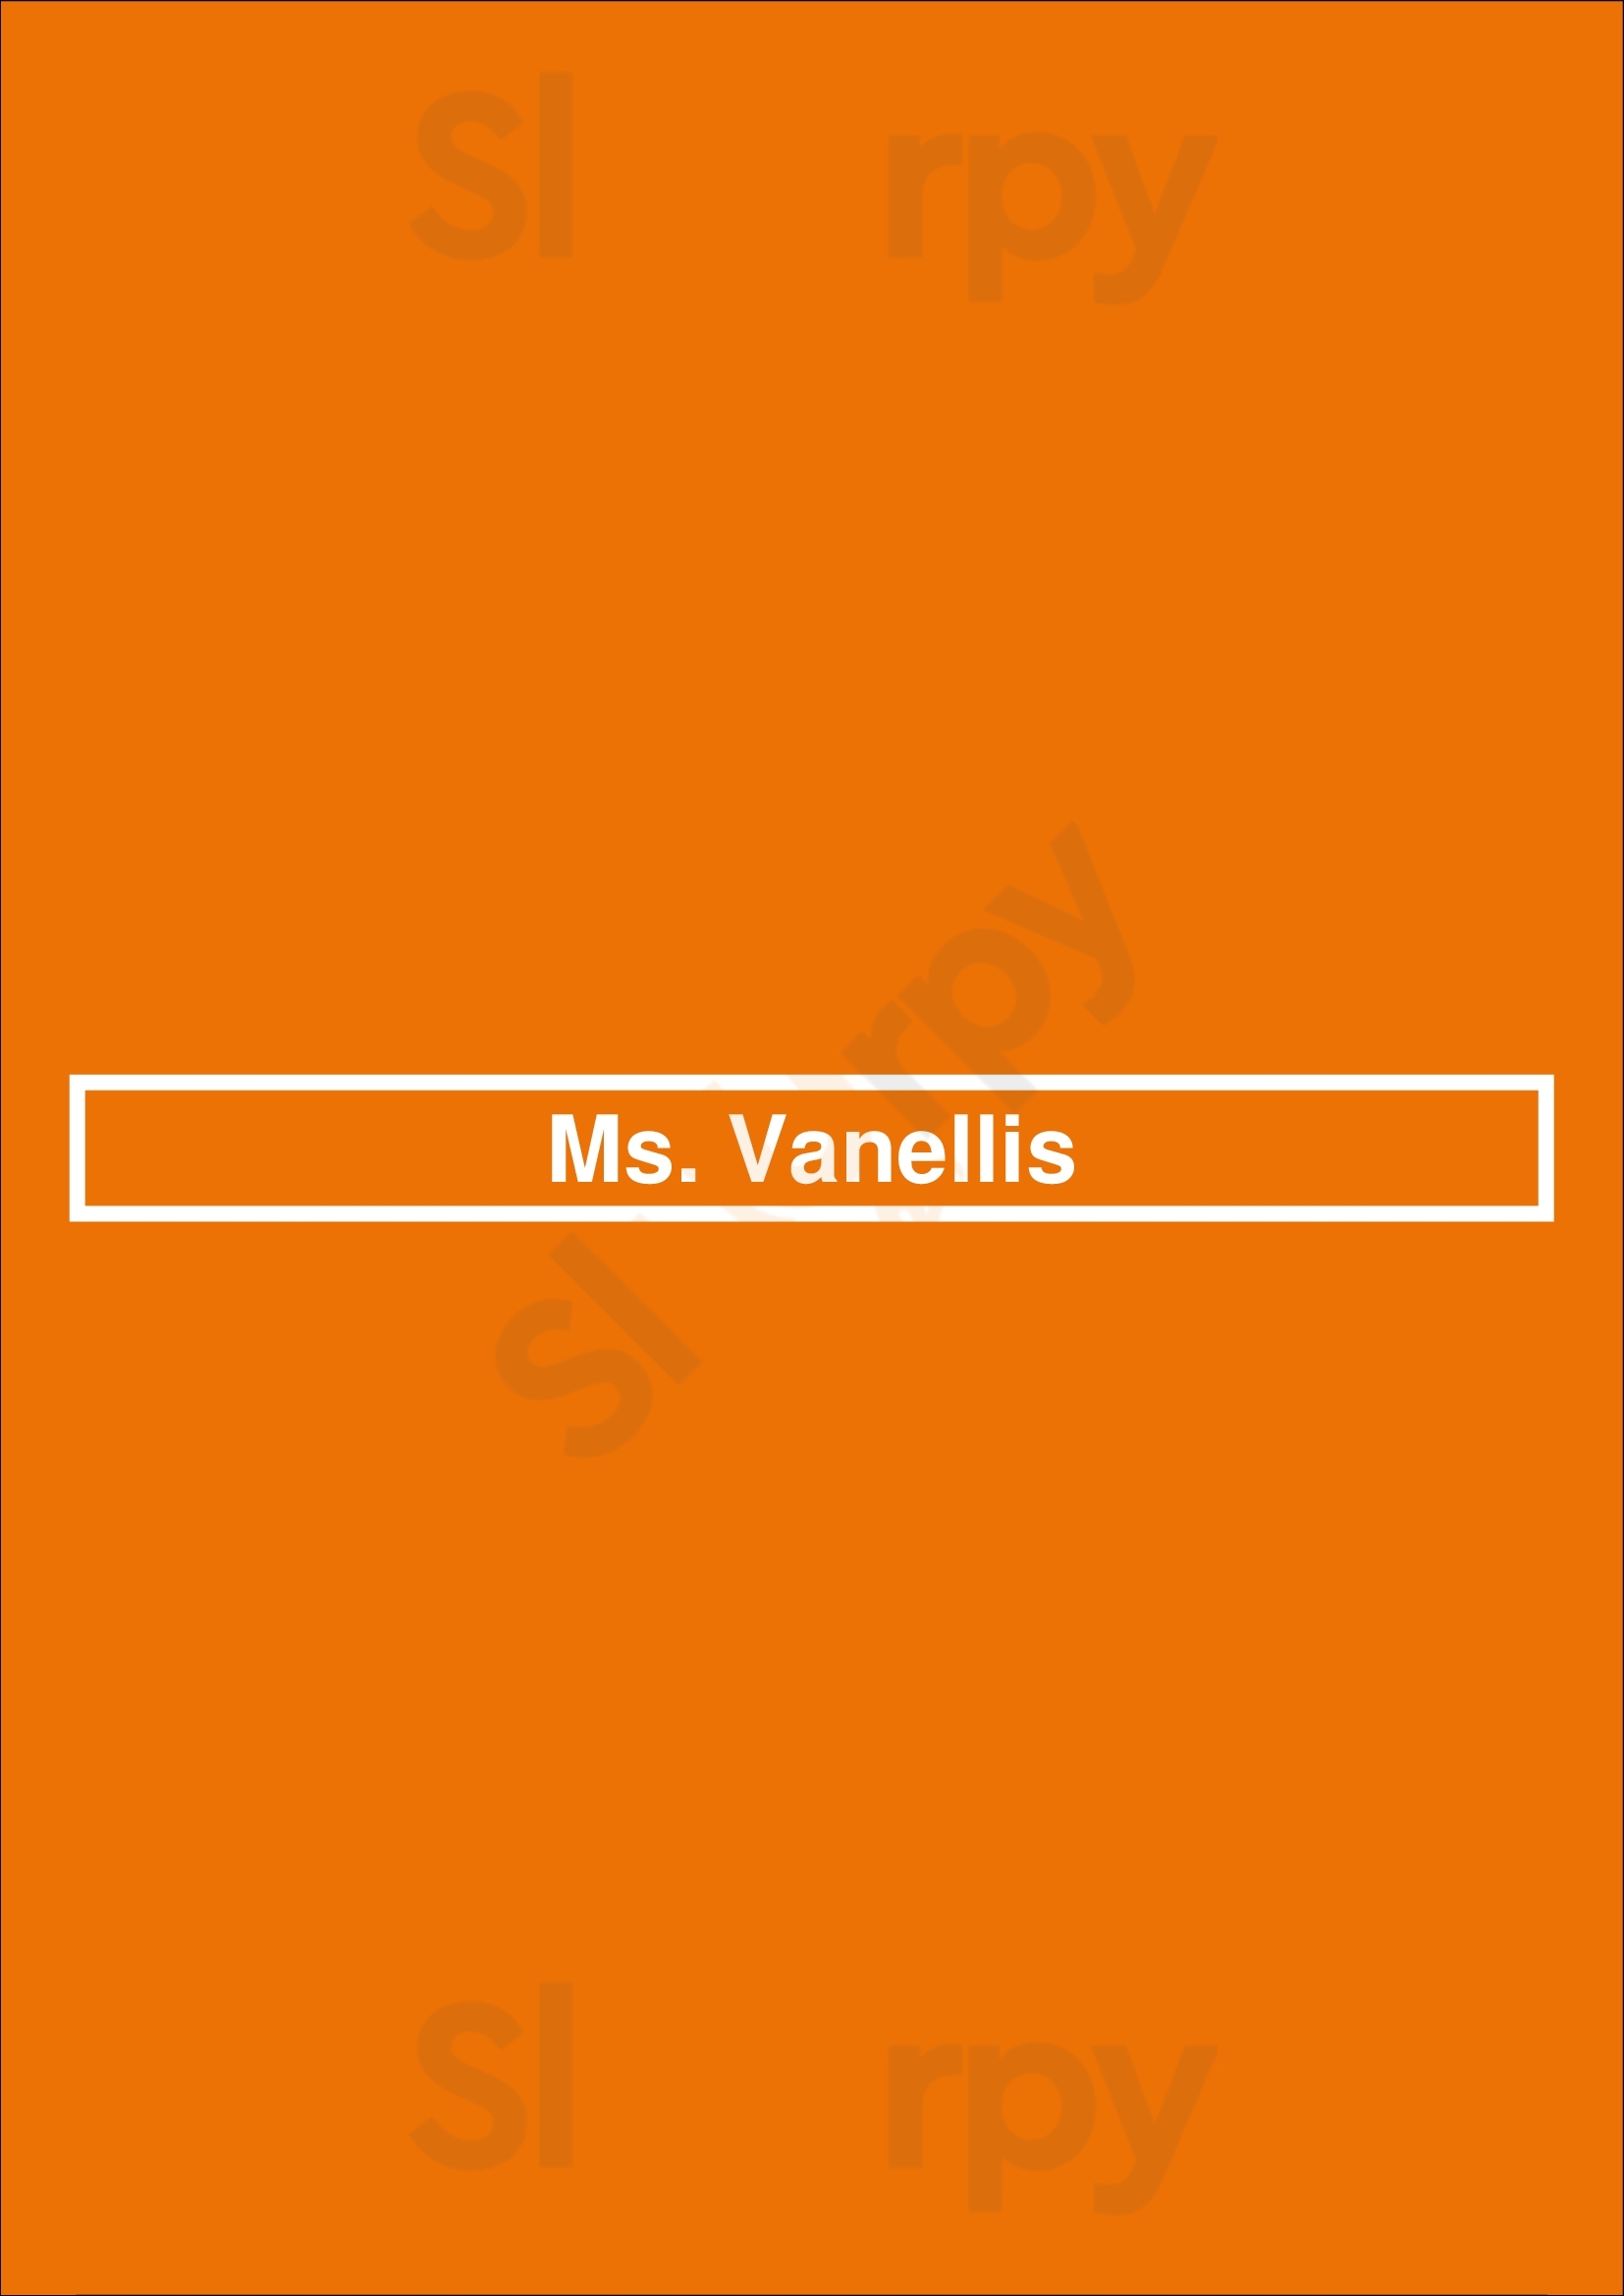 Ms. Vanellis Winnipeg Menu - 1